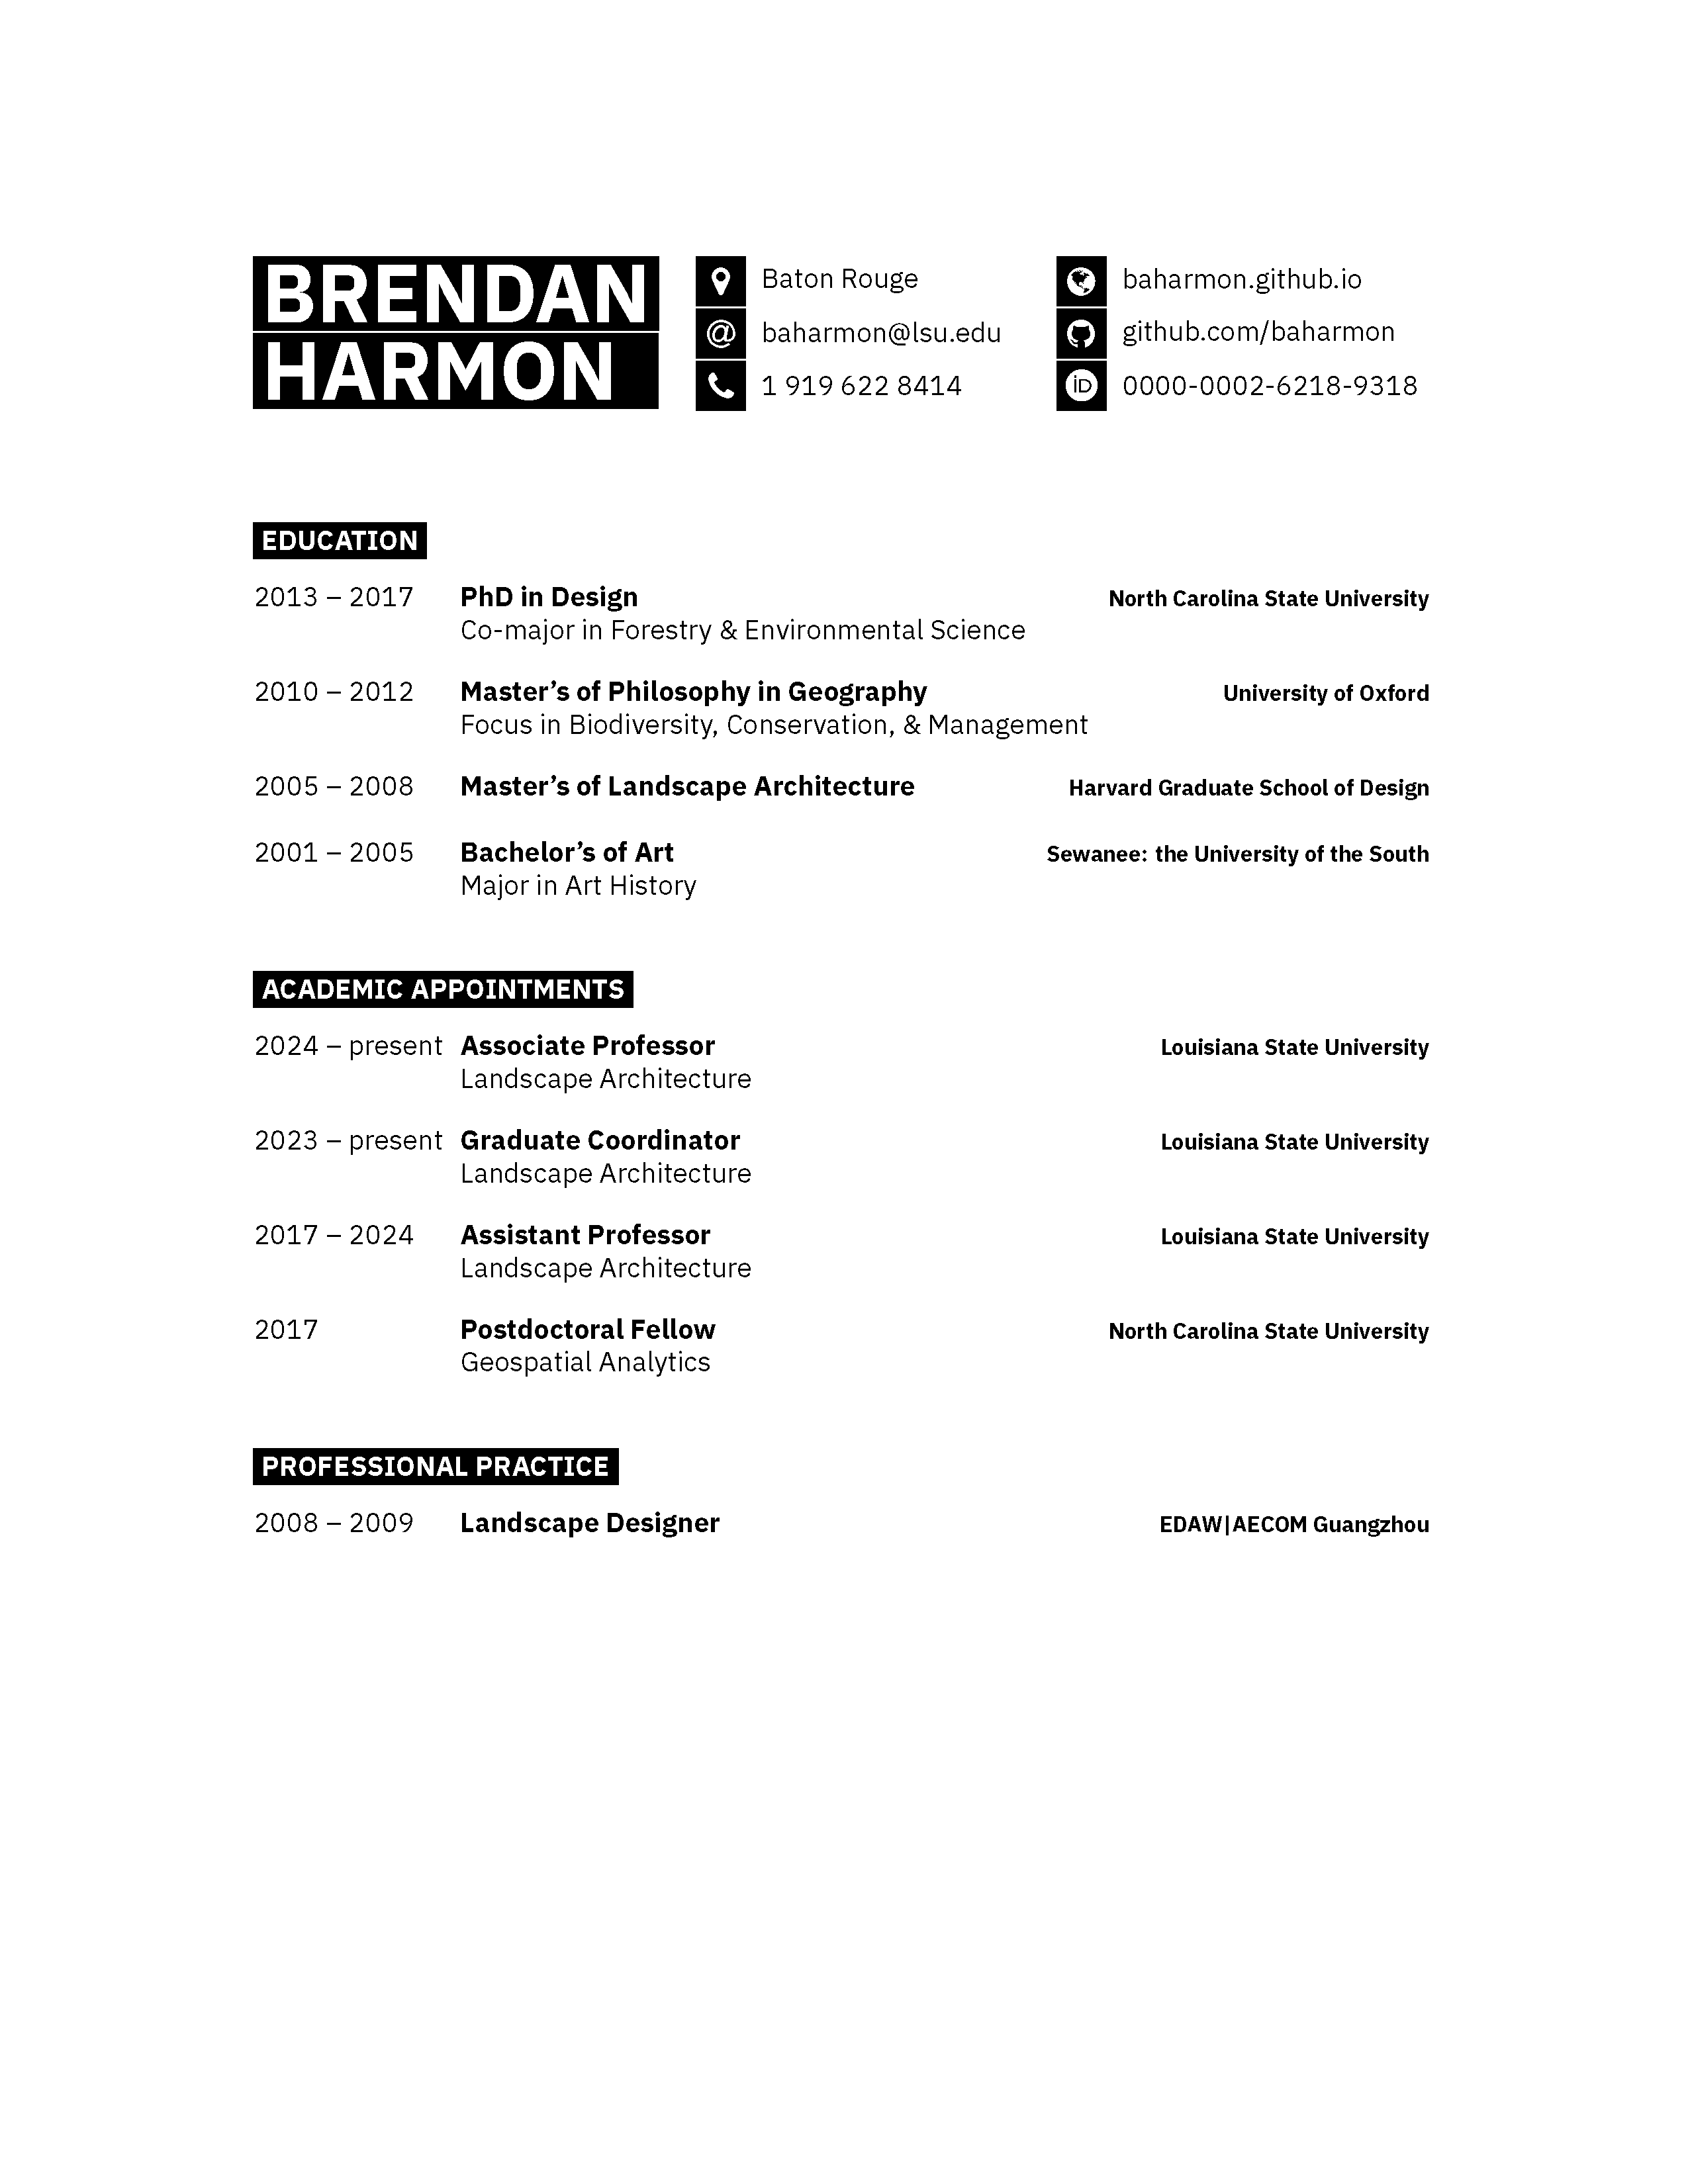 Brendan Harmon's CV